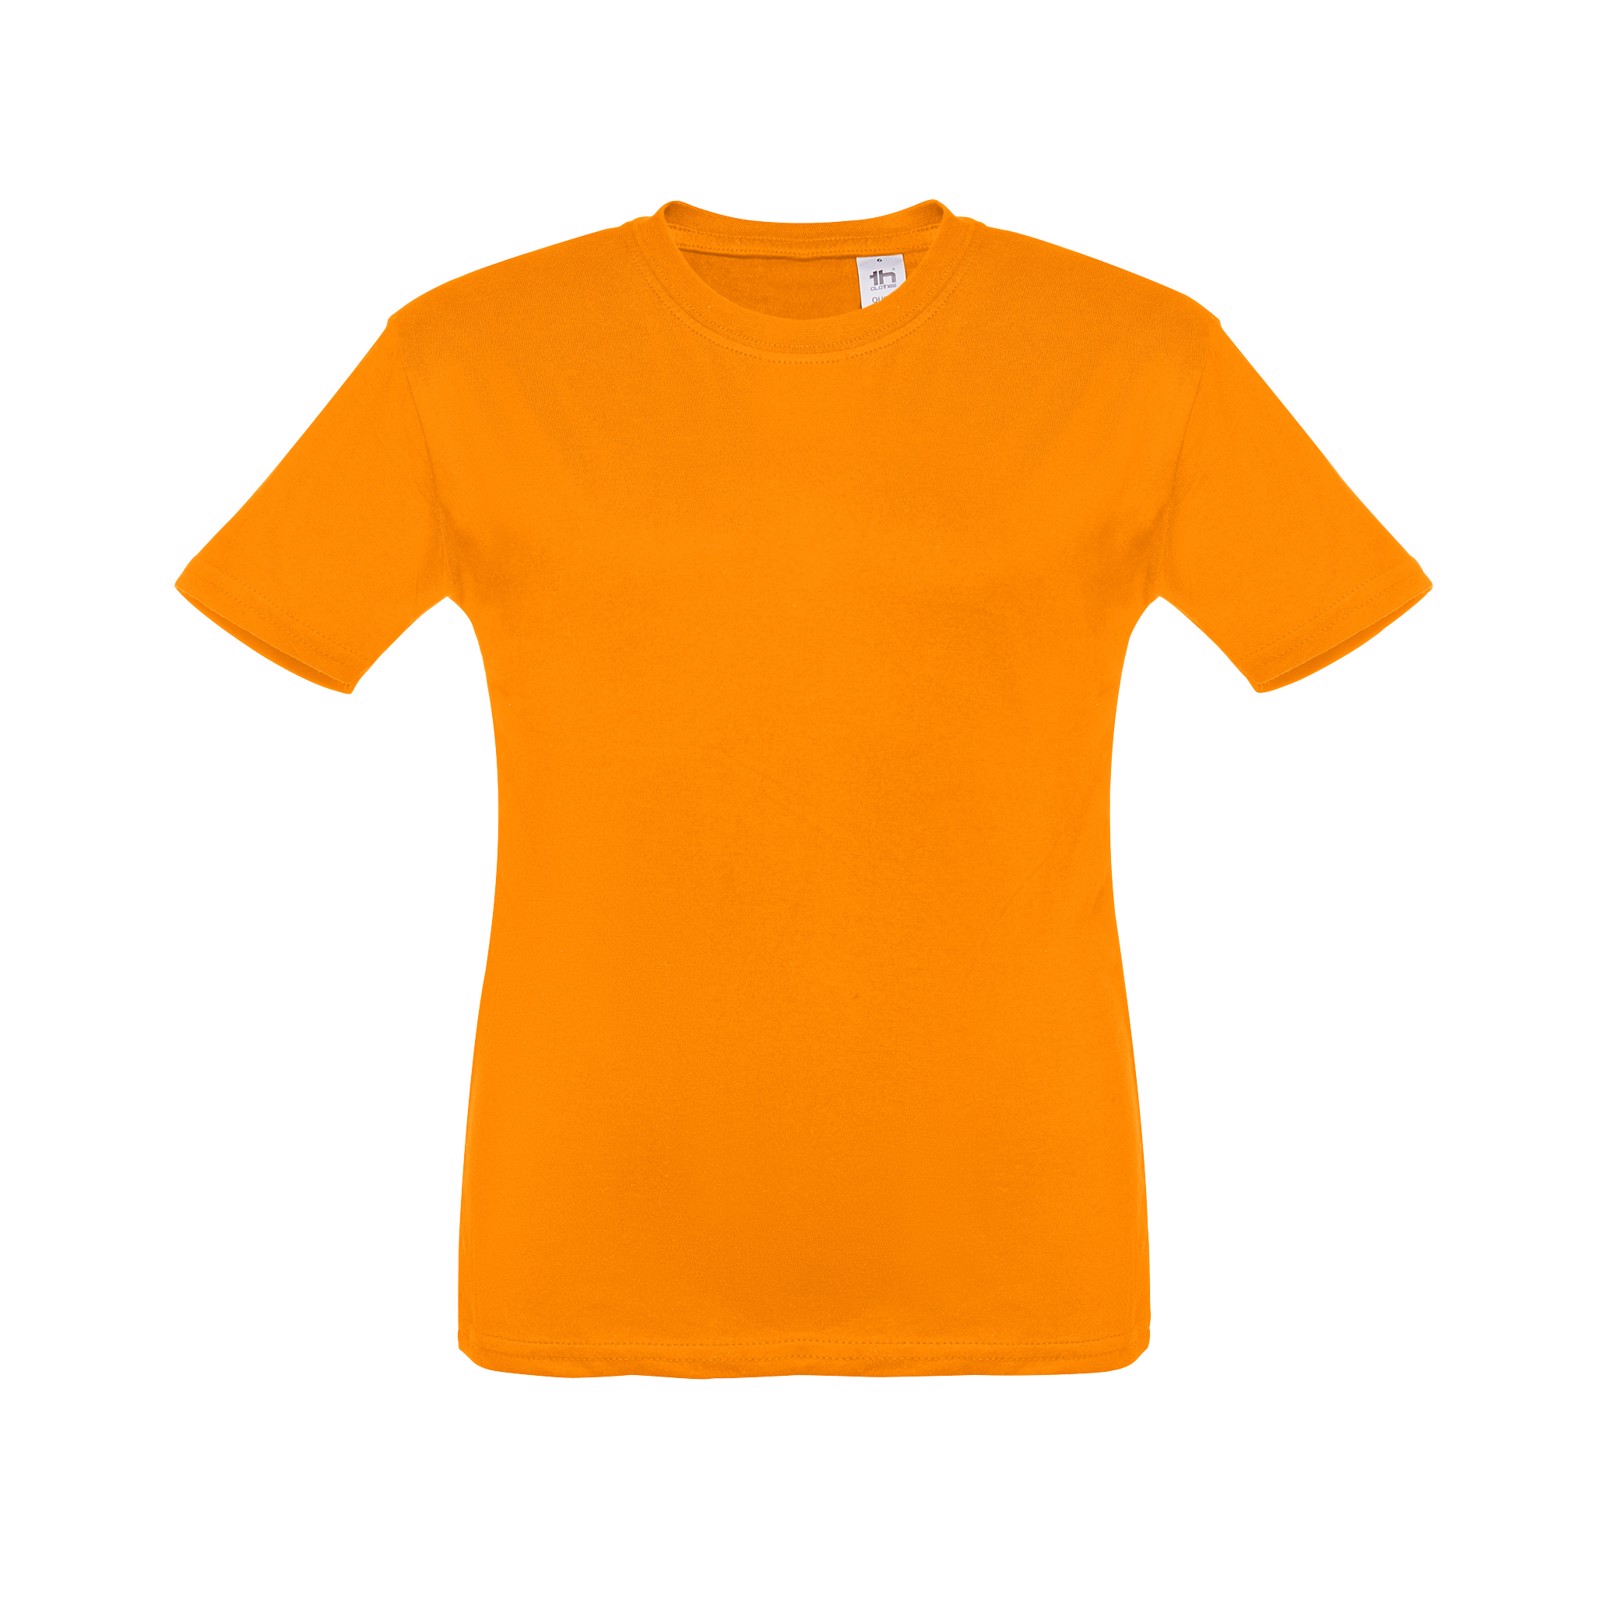 THC ANKARA KIDS. Children's t-shirt - Orange / 10